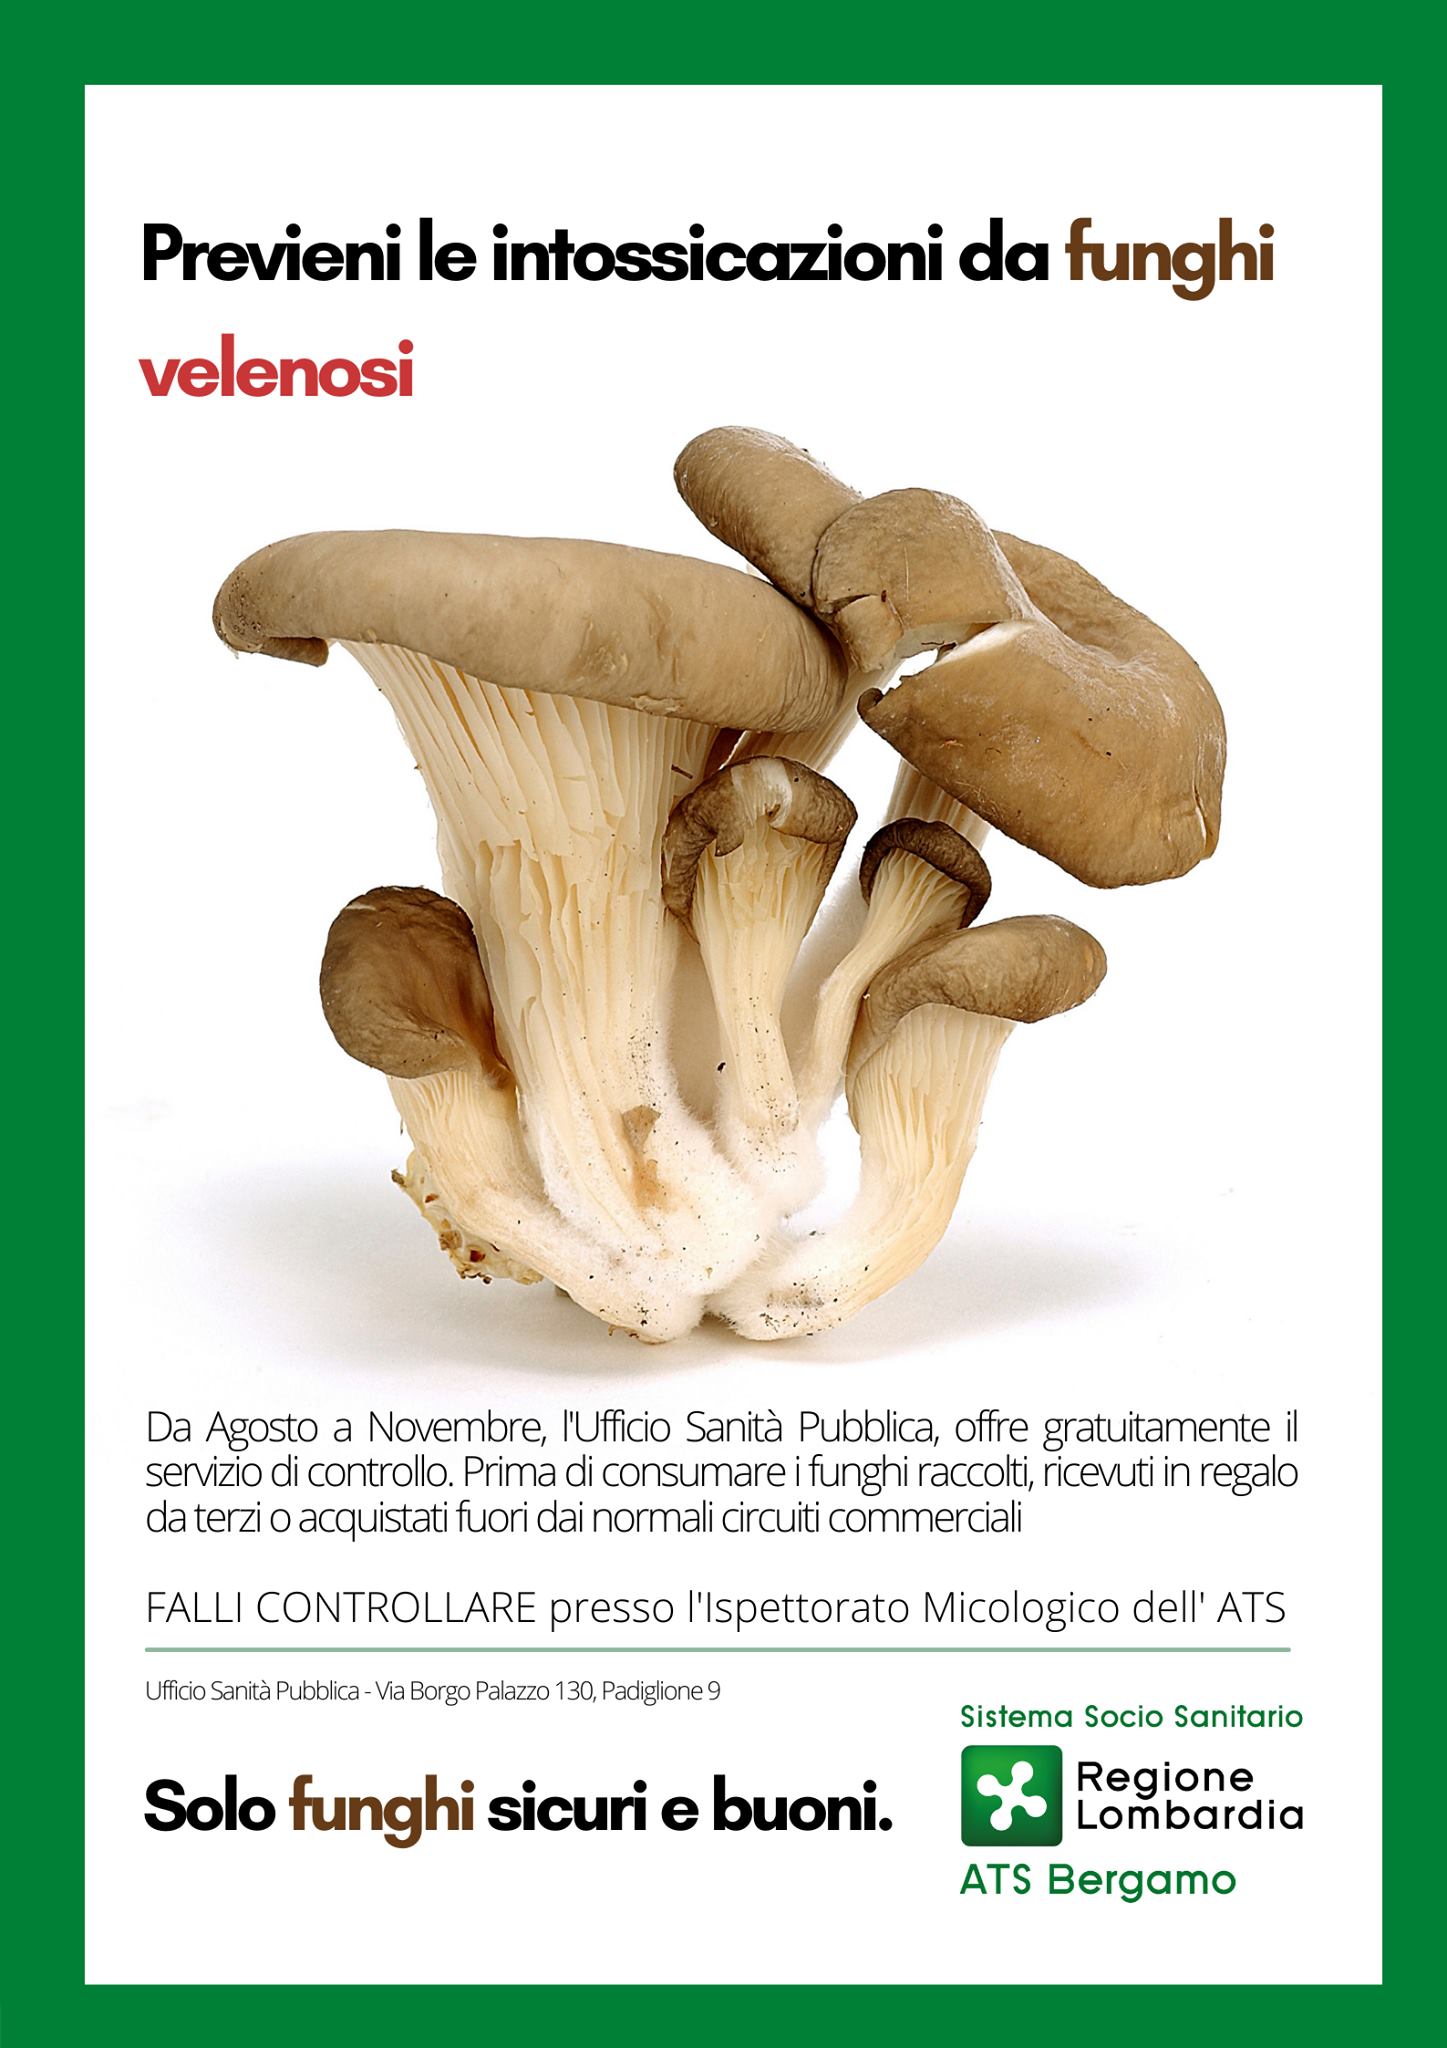 Immagine che raffigura Funghi Sicuri e Buoni - Servizio gratuito di ATS per controllo funghi